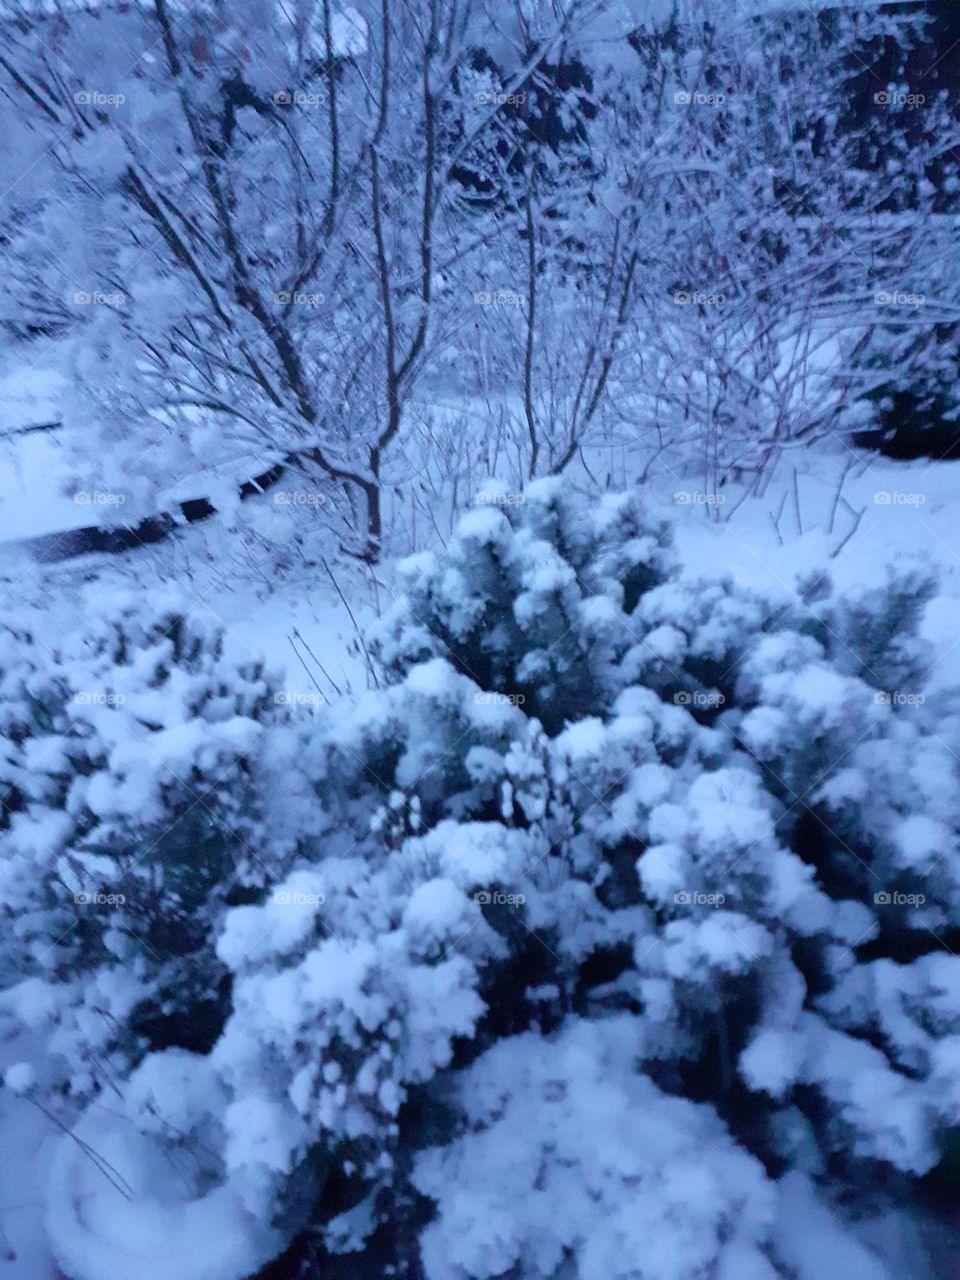 Winter in my garden.